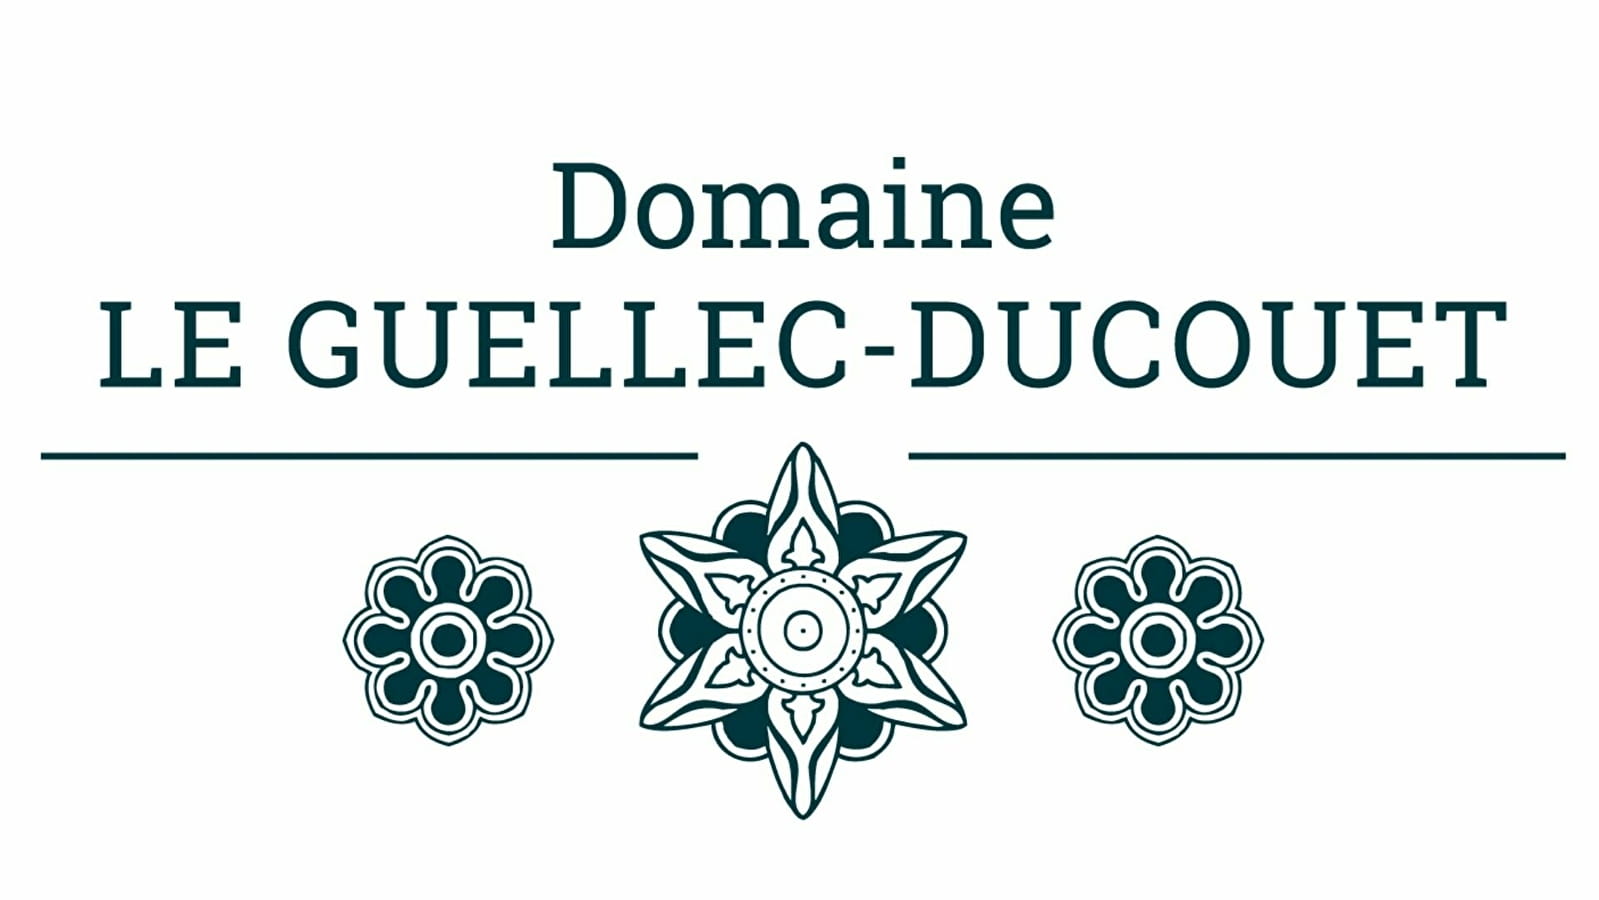 Le Guellec-Ducouet